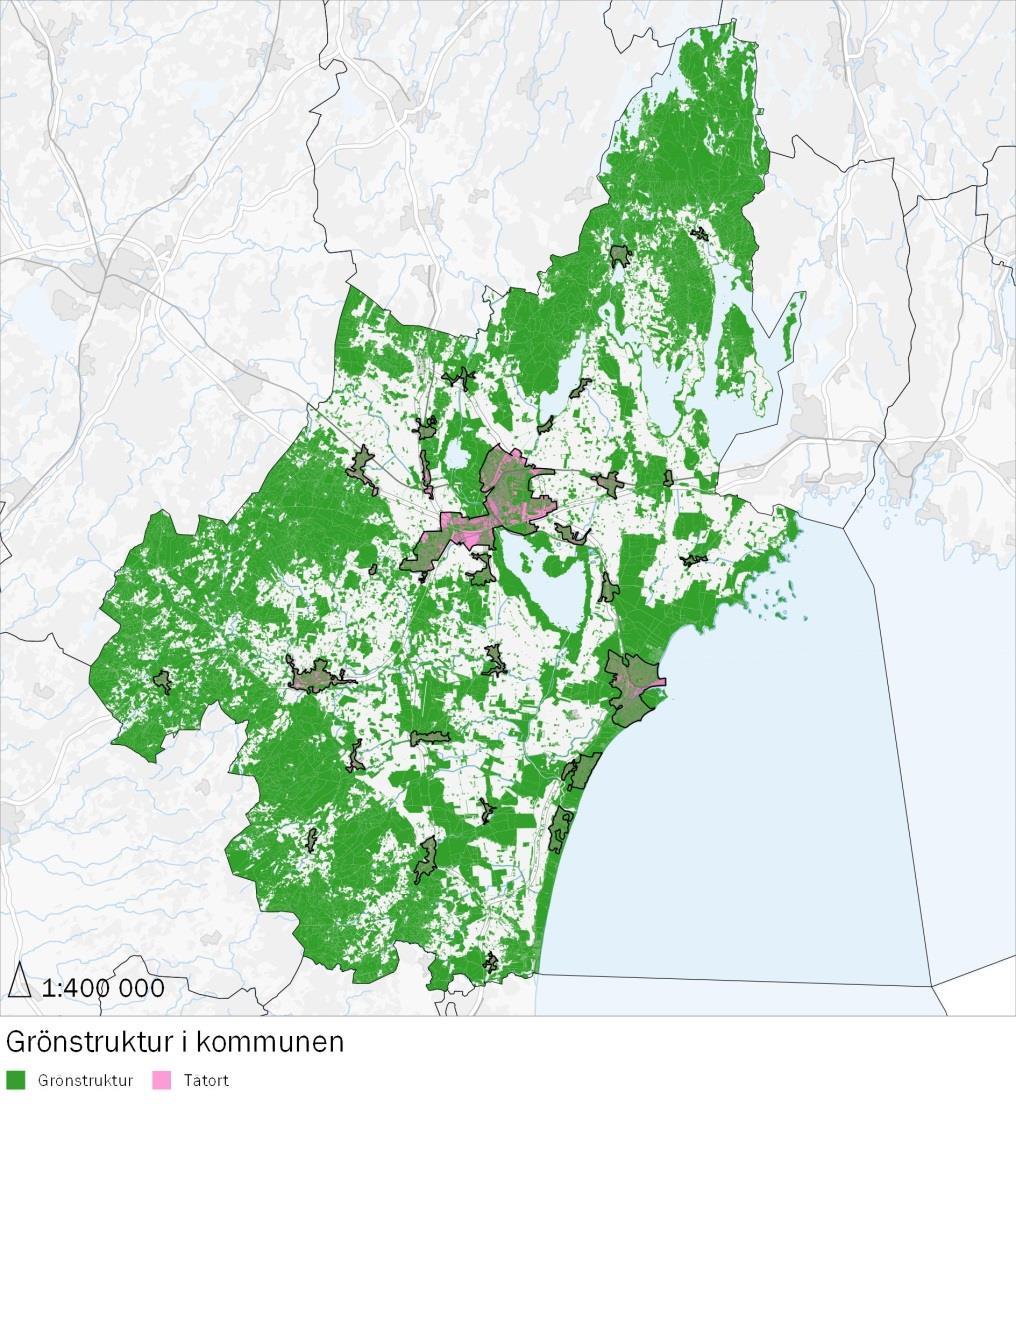 3 Grönstrukturen i Kristianstads kommun Kristianstads kommun har allemansrättslig mark motsvarande 50-60% av ytan vilket vi tidigare har sett i den regionala översikten.